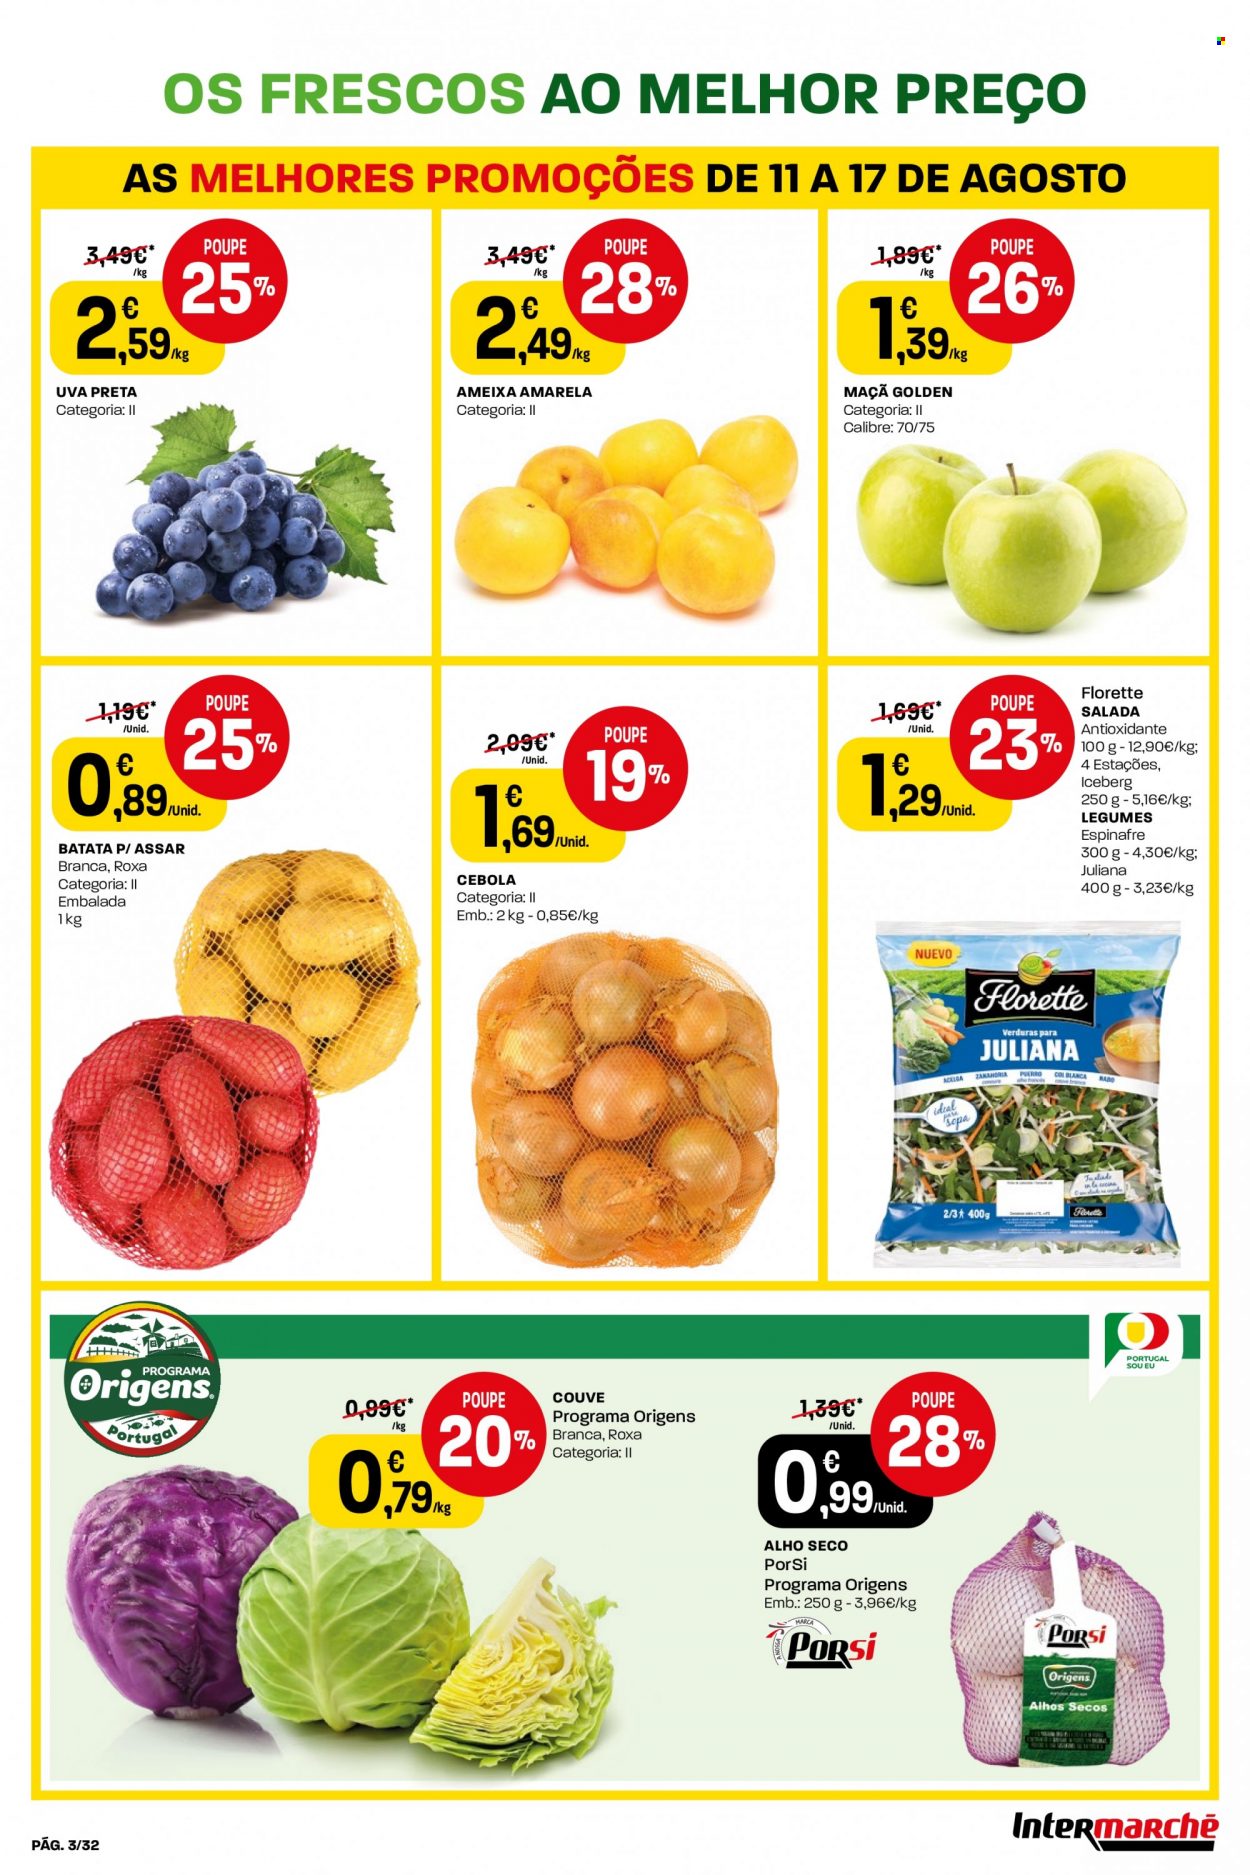 thumbnail - Folheto Intermarché - 11.8.2022 - 17.8.2022 - Produtos em promoção - maçã, uva, ameixa, uva preta, batata, salada, acelga, alho, couve, cebola, espinafre, sopa. Página 3.